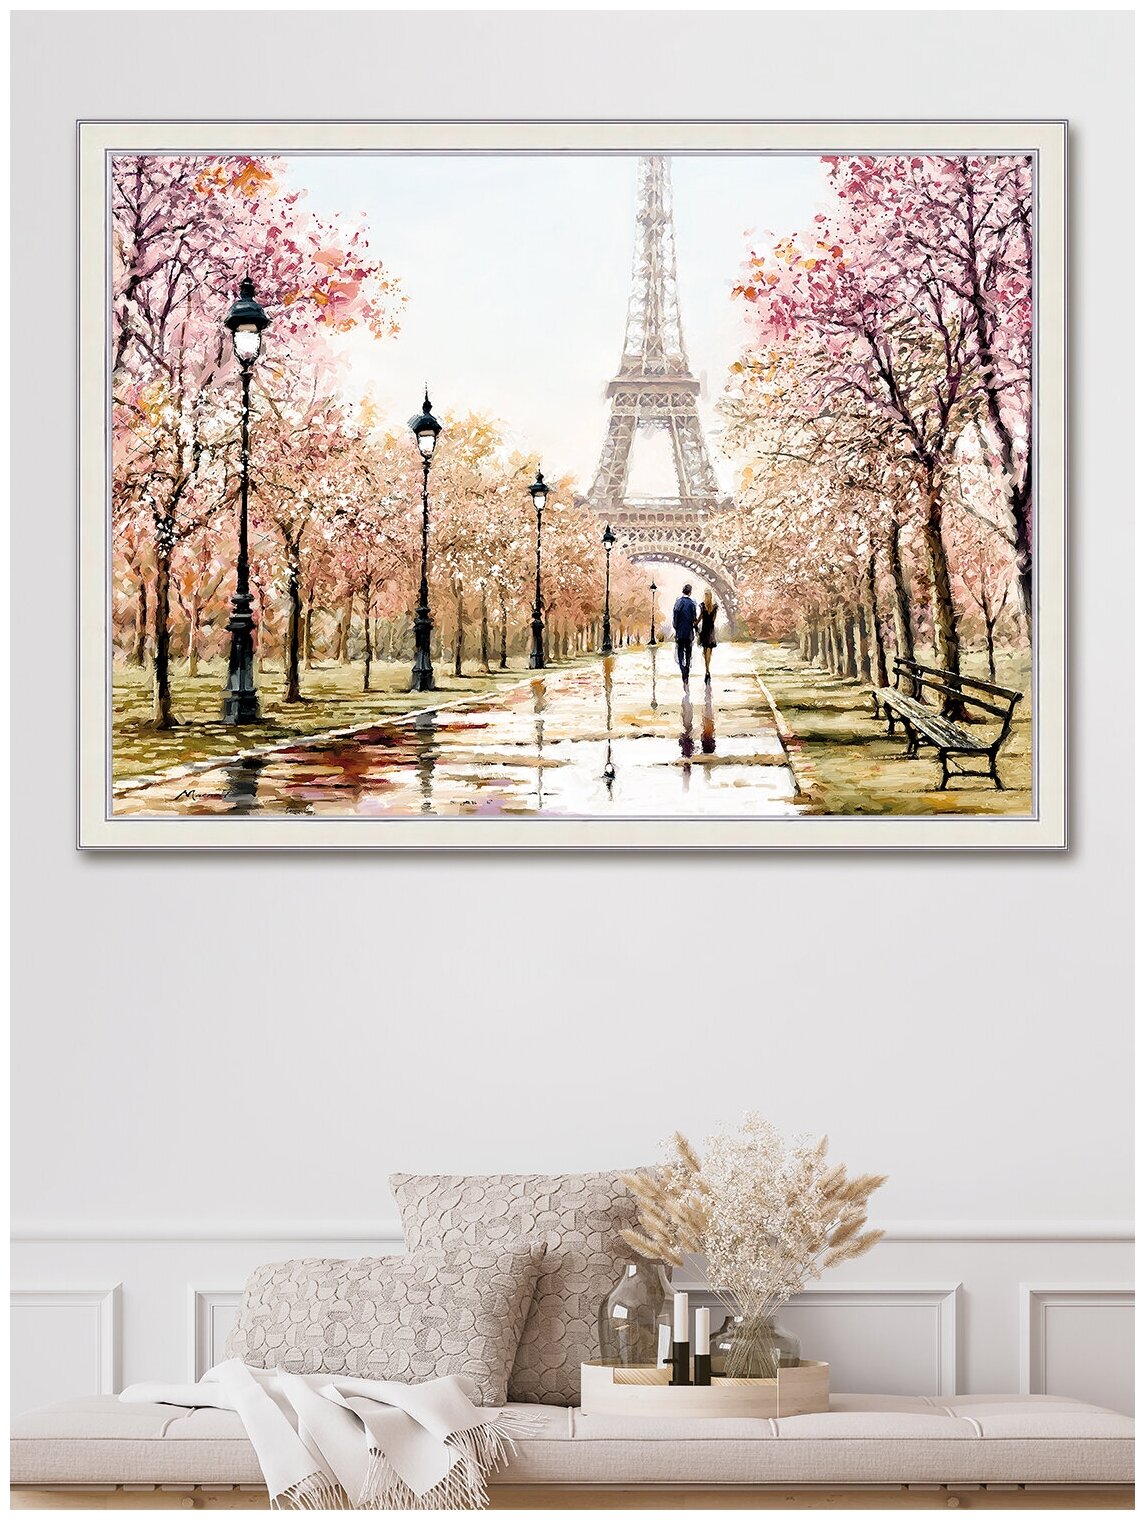 Картина для интерьера "Весенний Париж" 57х77 см/большая интерьерная картина в гостиную, в спальню/городской пейзаж, романтика/Графис